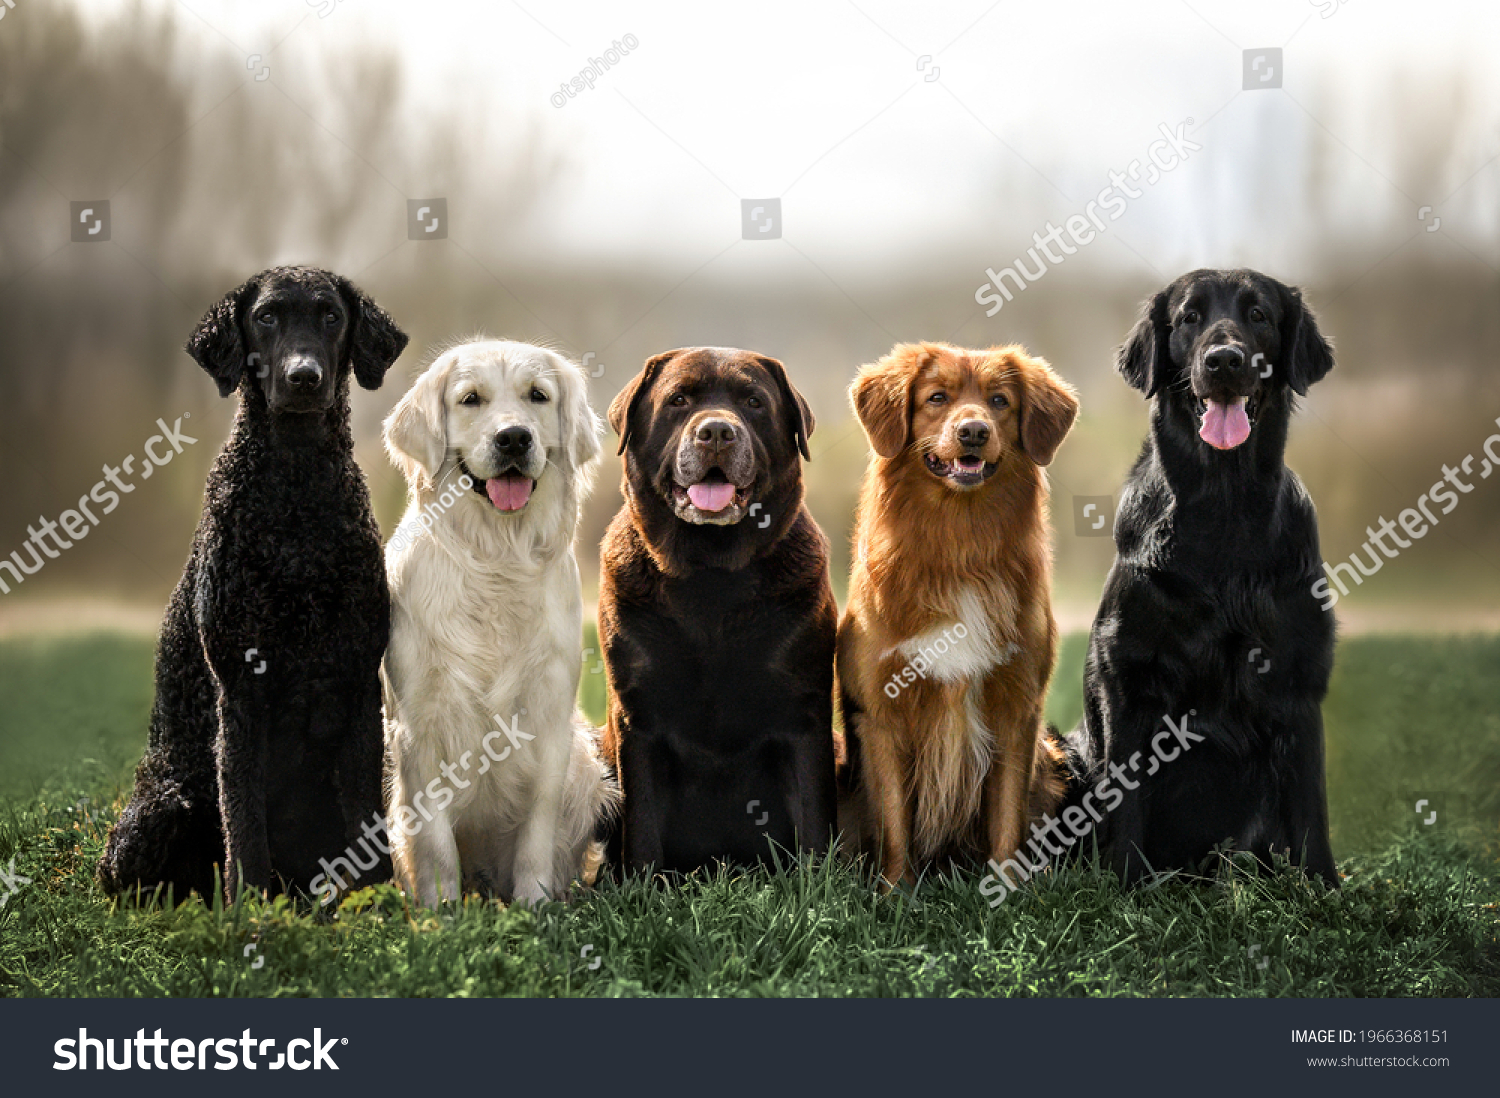 curly coated retriever, golden retriever, labrador, nova scotia duck tolling retriever and flat coated retriever dogs sitting together outdoors #1966368151